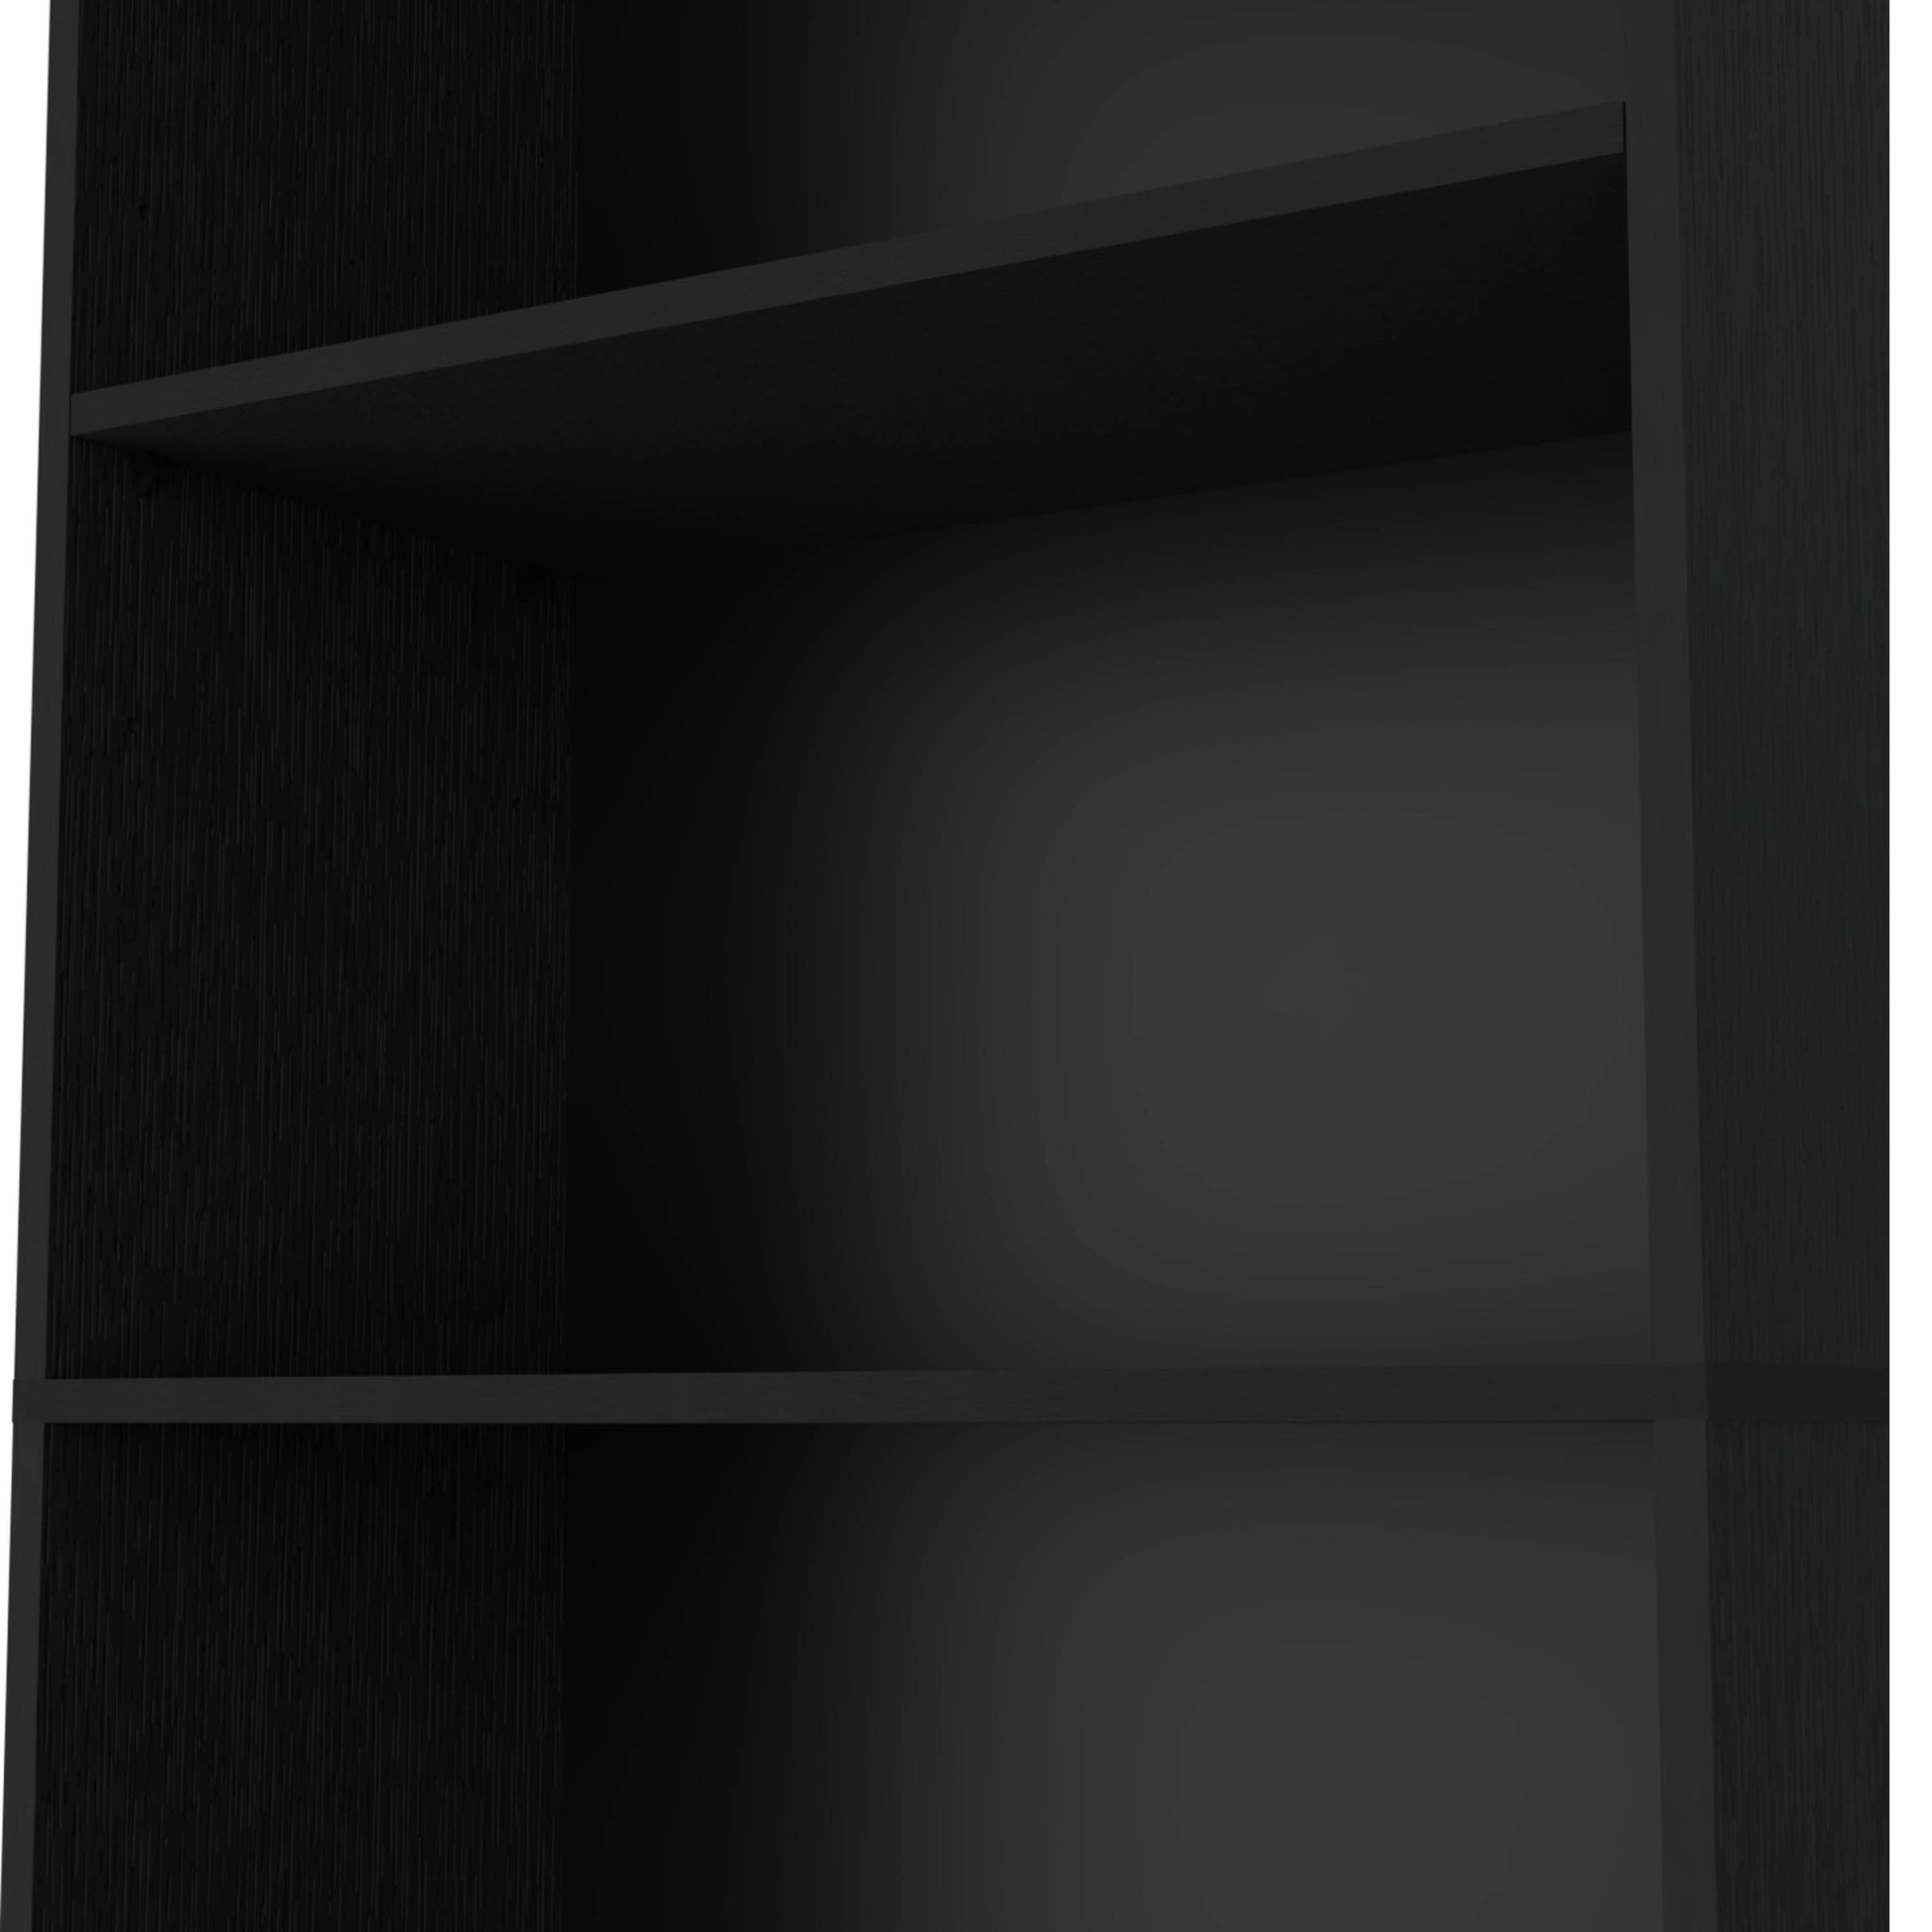 Sutton 4 Shelves Bookcase With Modern Storage